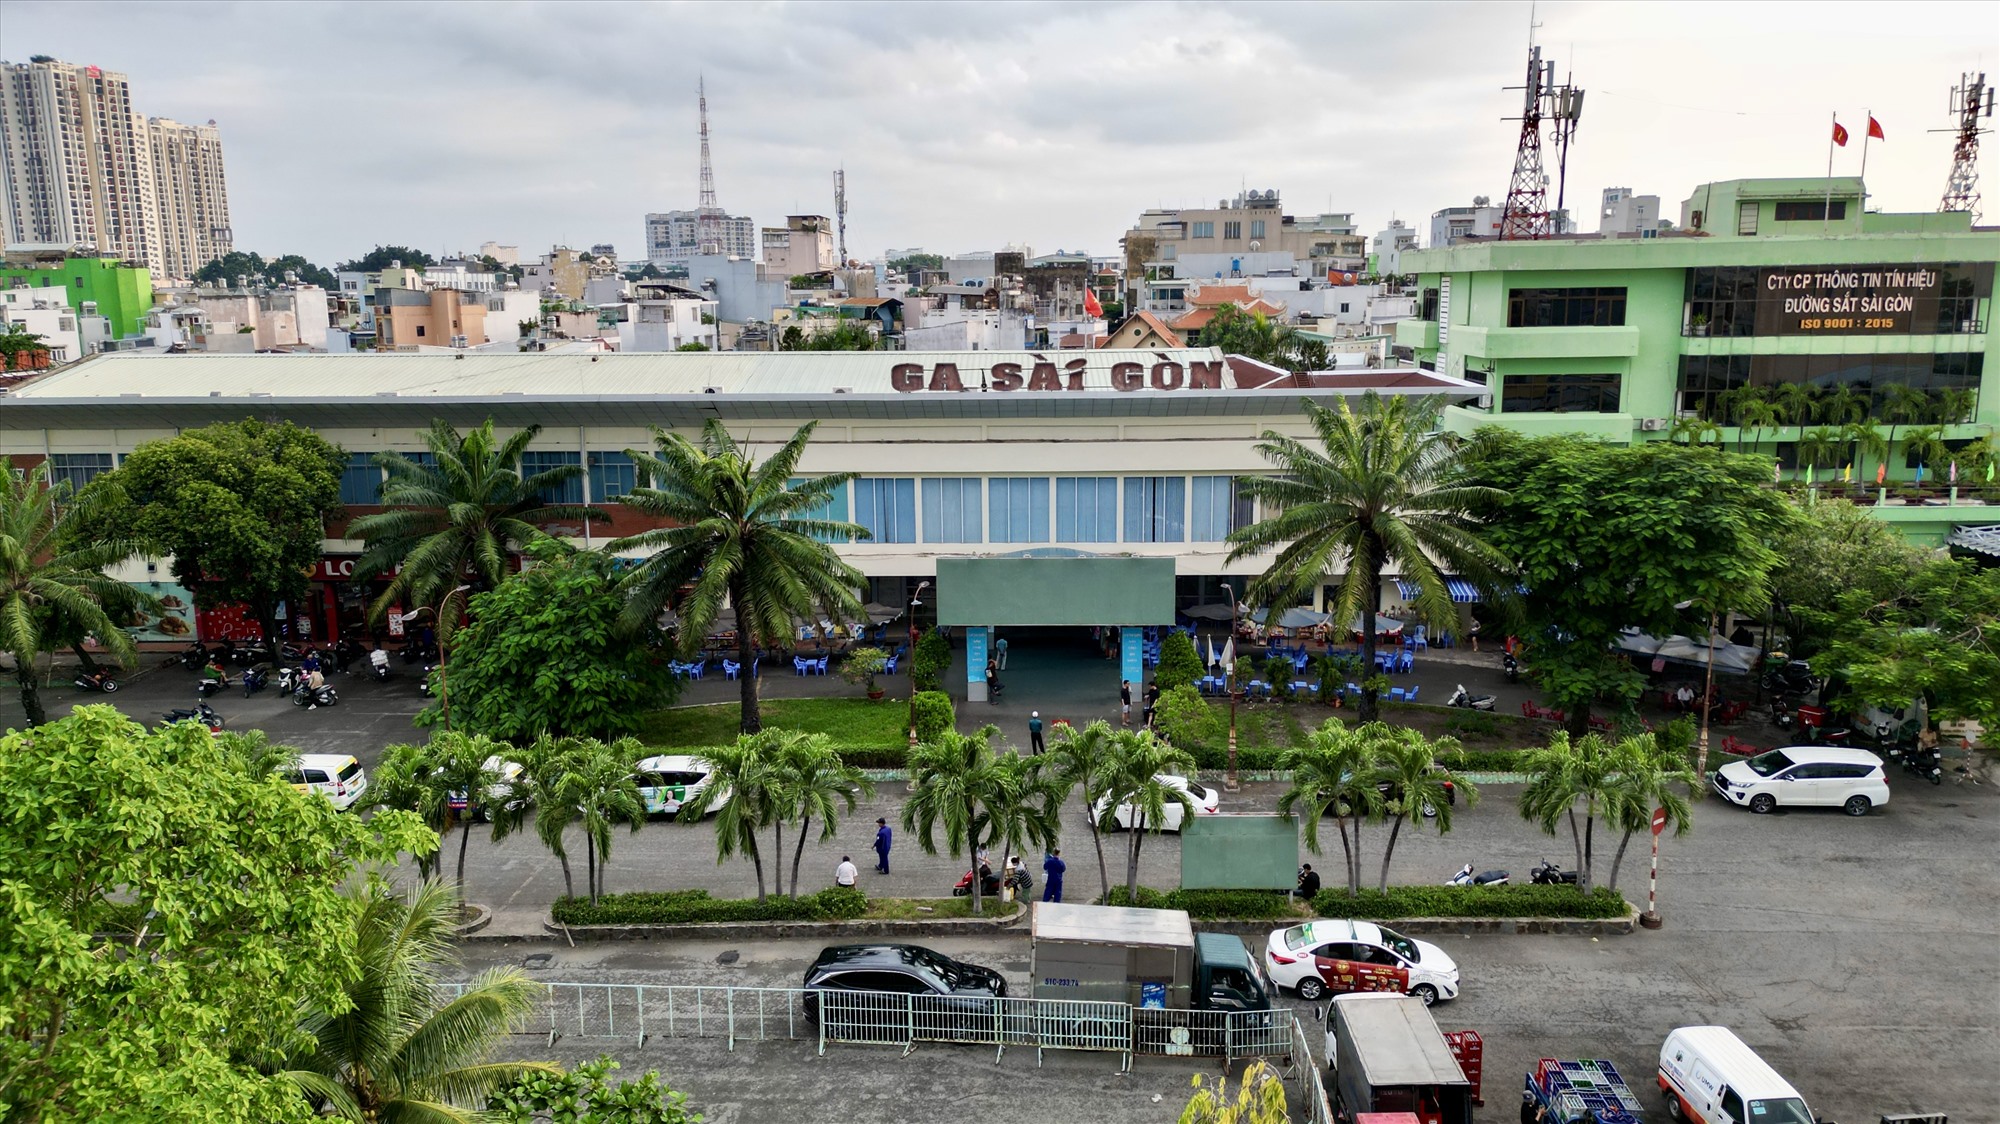 Ga Sài Gòn nằm trên địa bàn Quận 3, có diện tích khoảng 6,14ha. Đây là ga cuối của tuyến đường sắt quốc gia Hà Nội - TPHCM, hoạt động với hai loại hình vận chuyển chính là chở khách và hàng hóa.